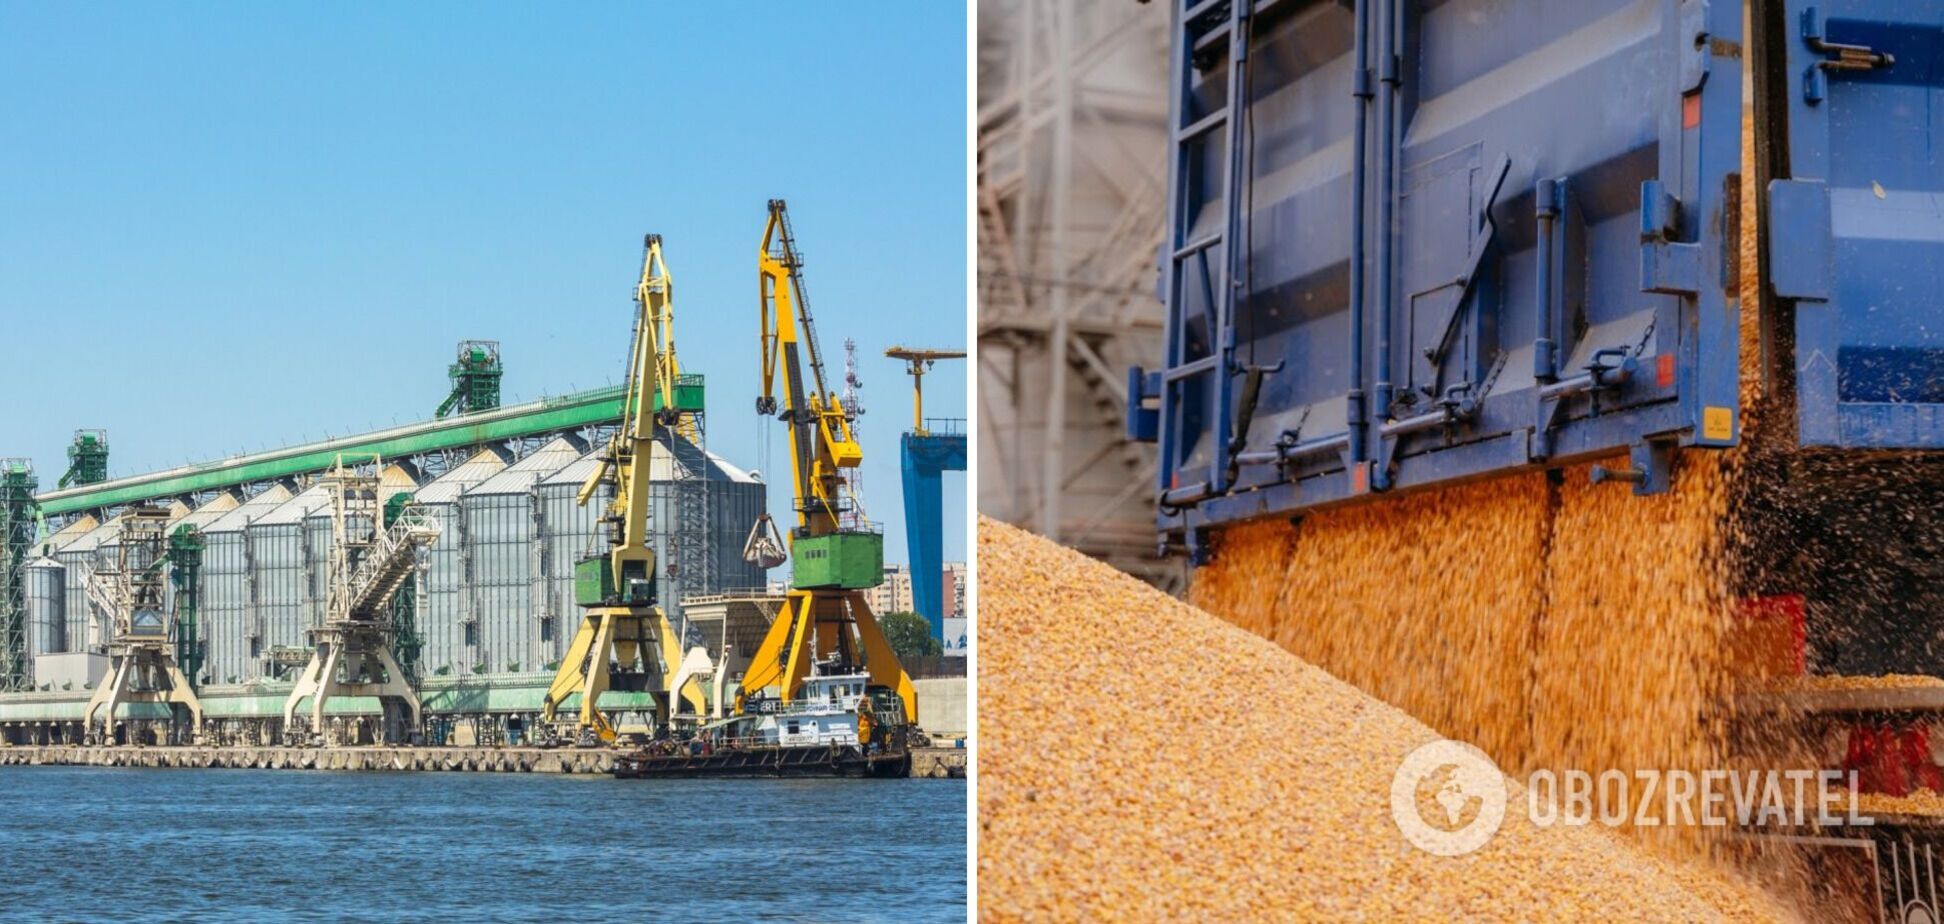 В деблокаде экспорта зерна наметился прогресс, считают в СМИ